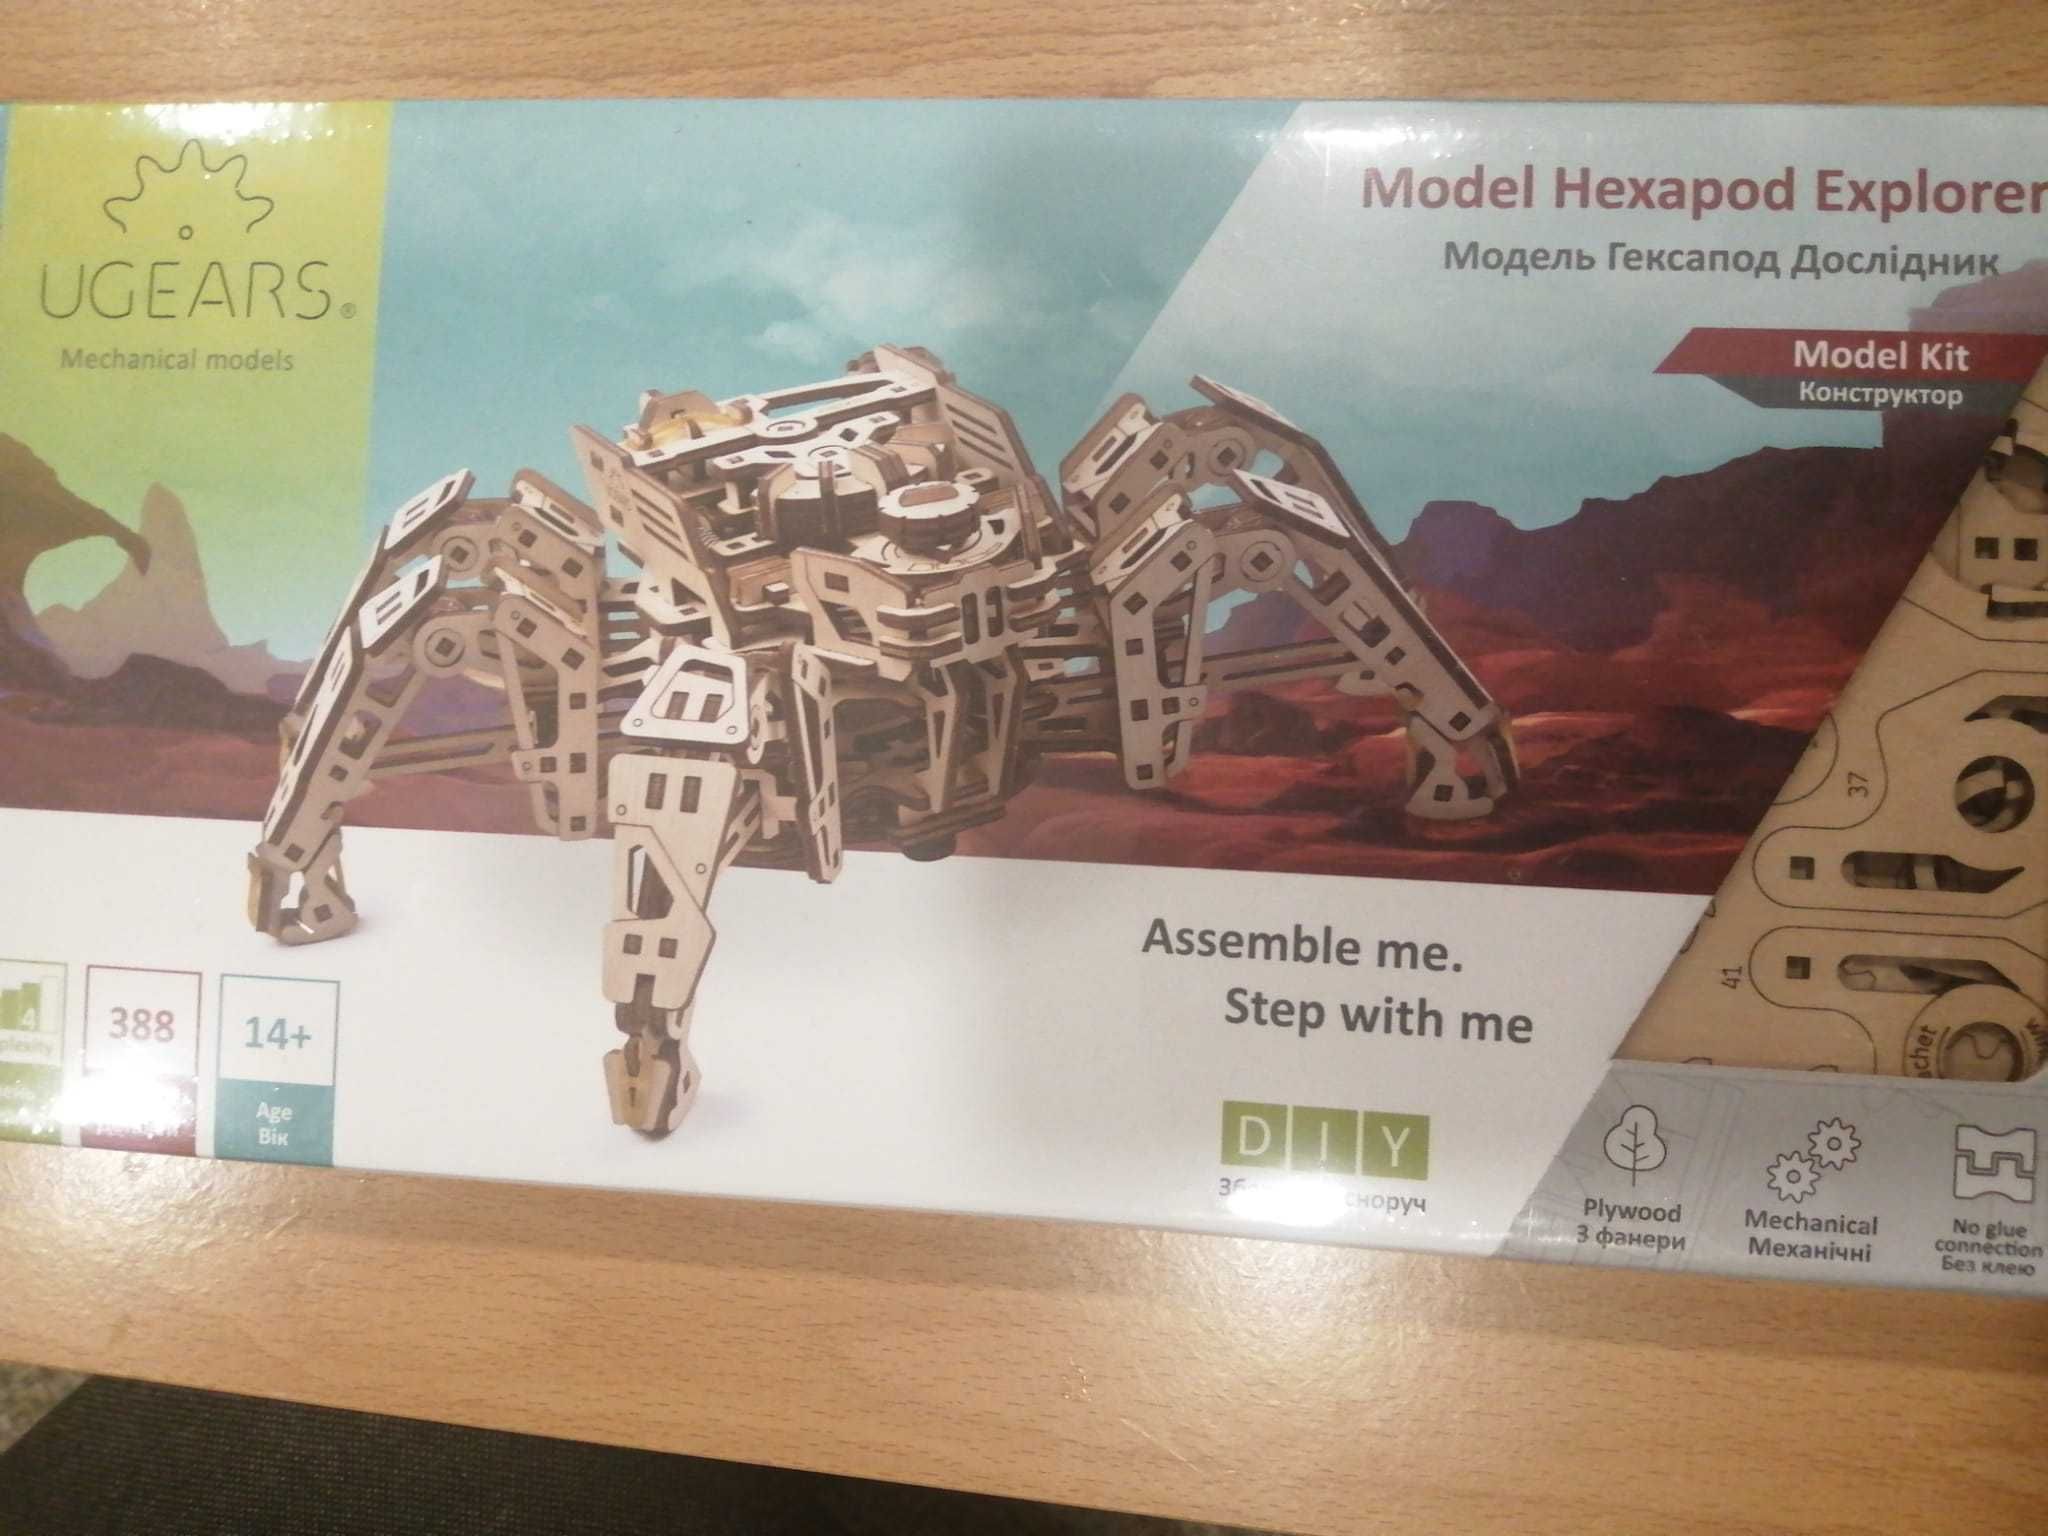 ugears mechanical models - hexapod explorer